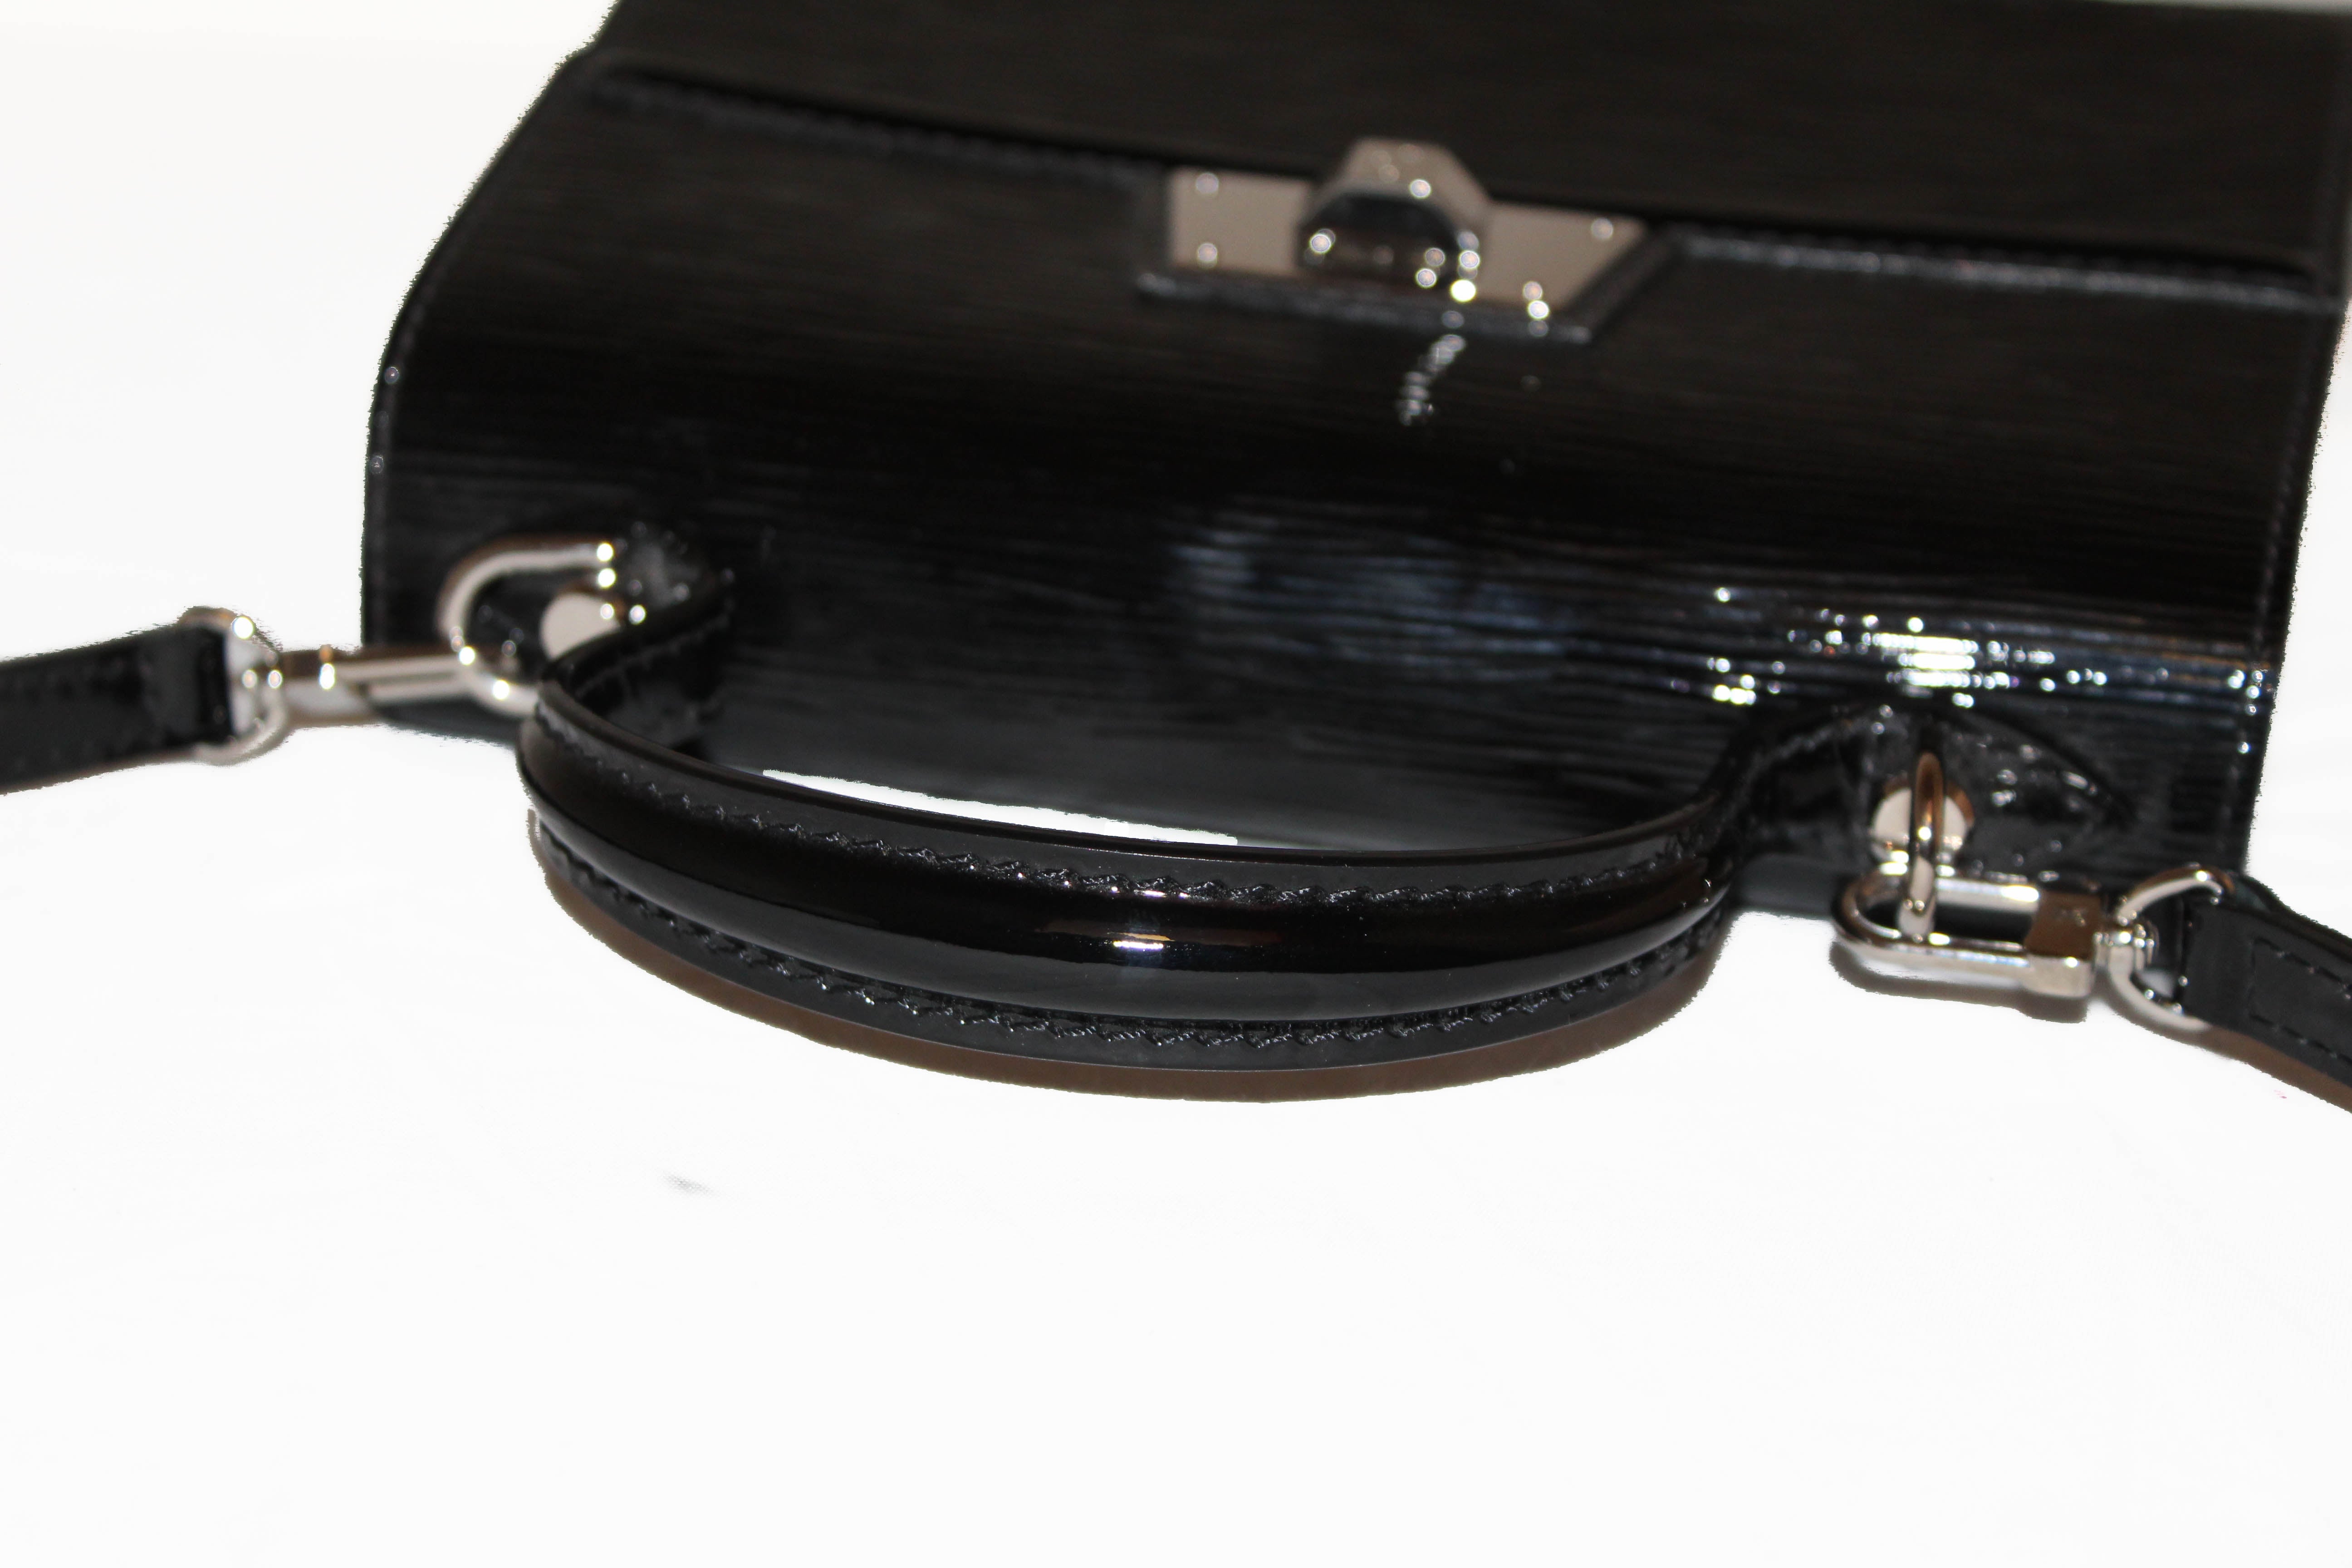 Louis Vuitton Sevigne PM Bag